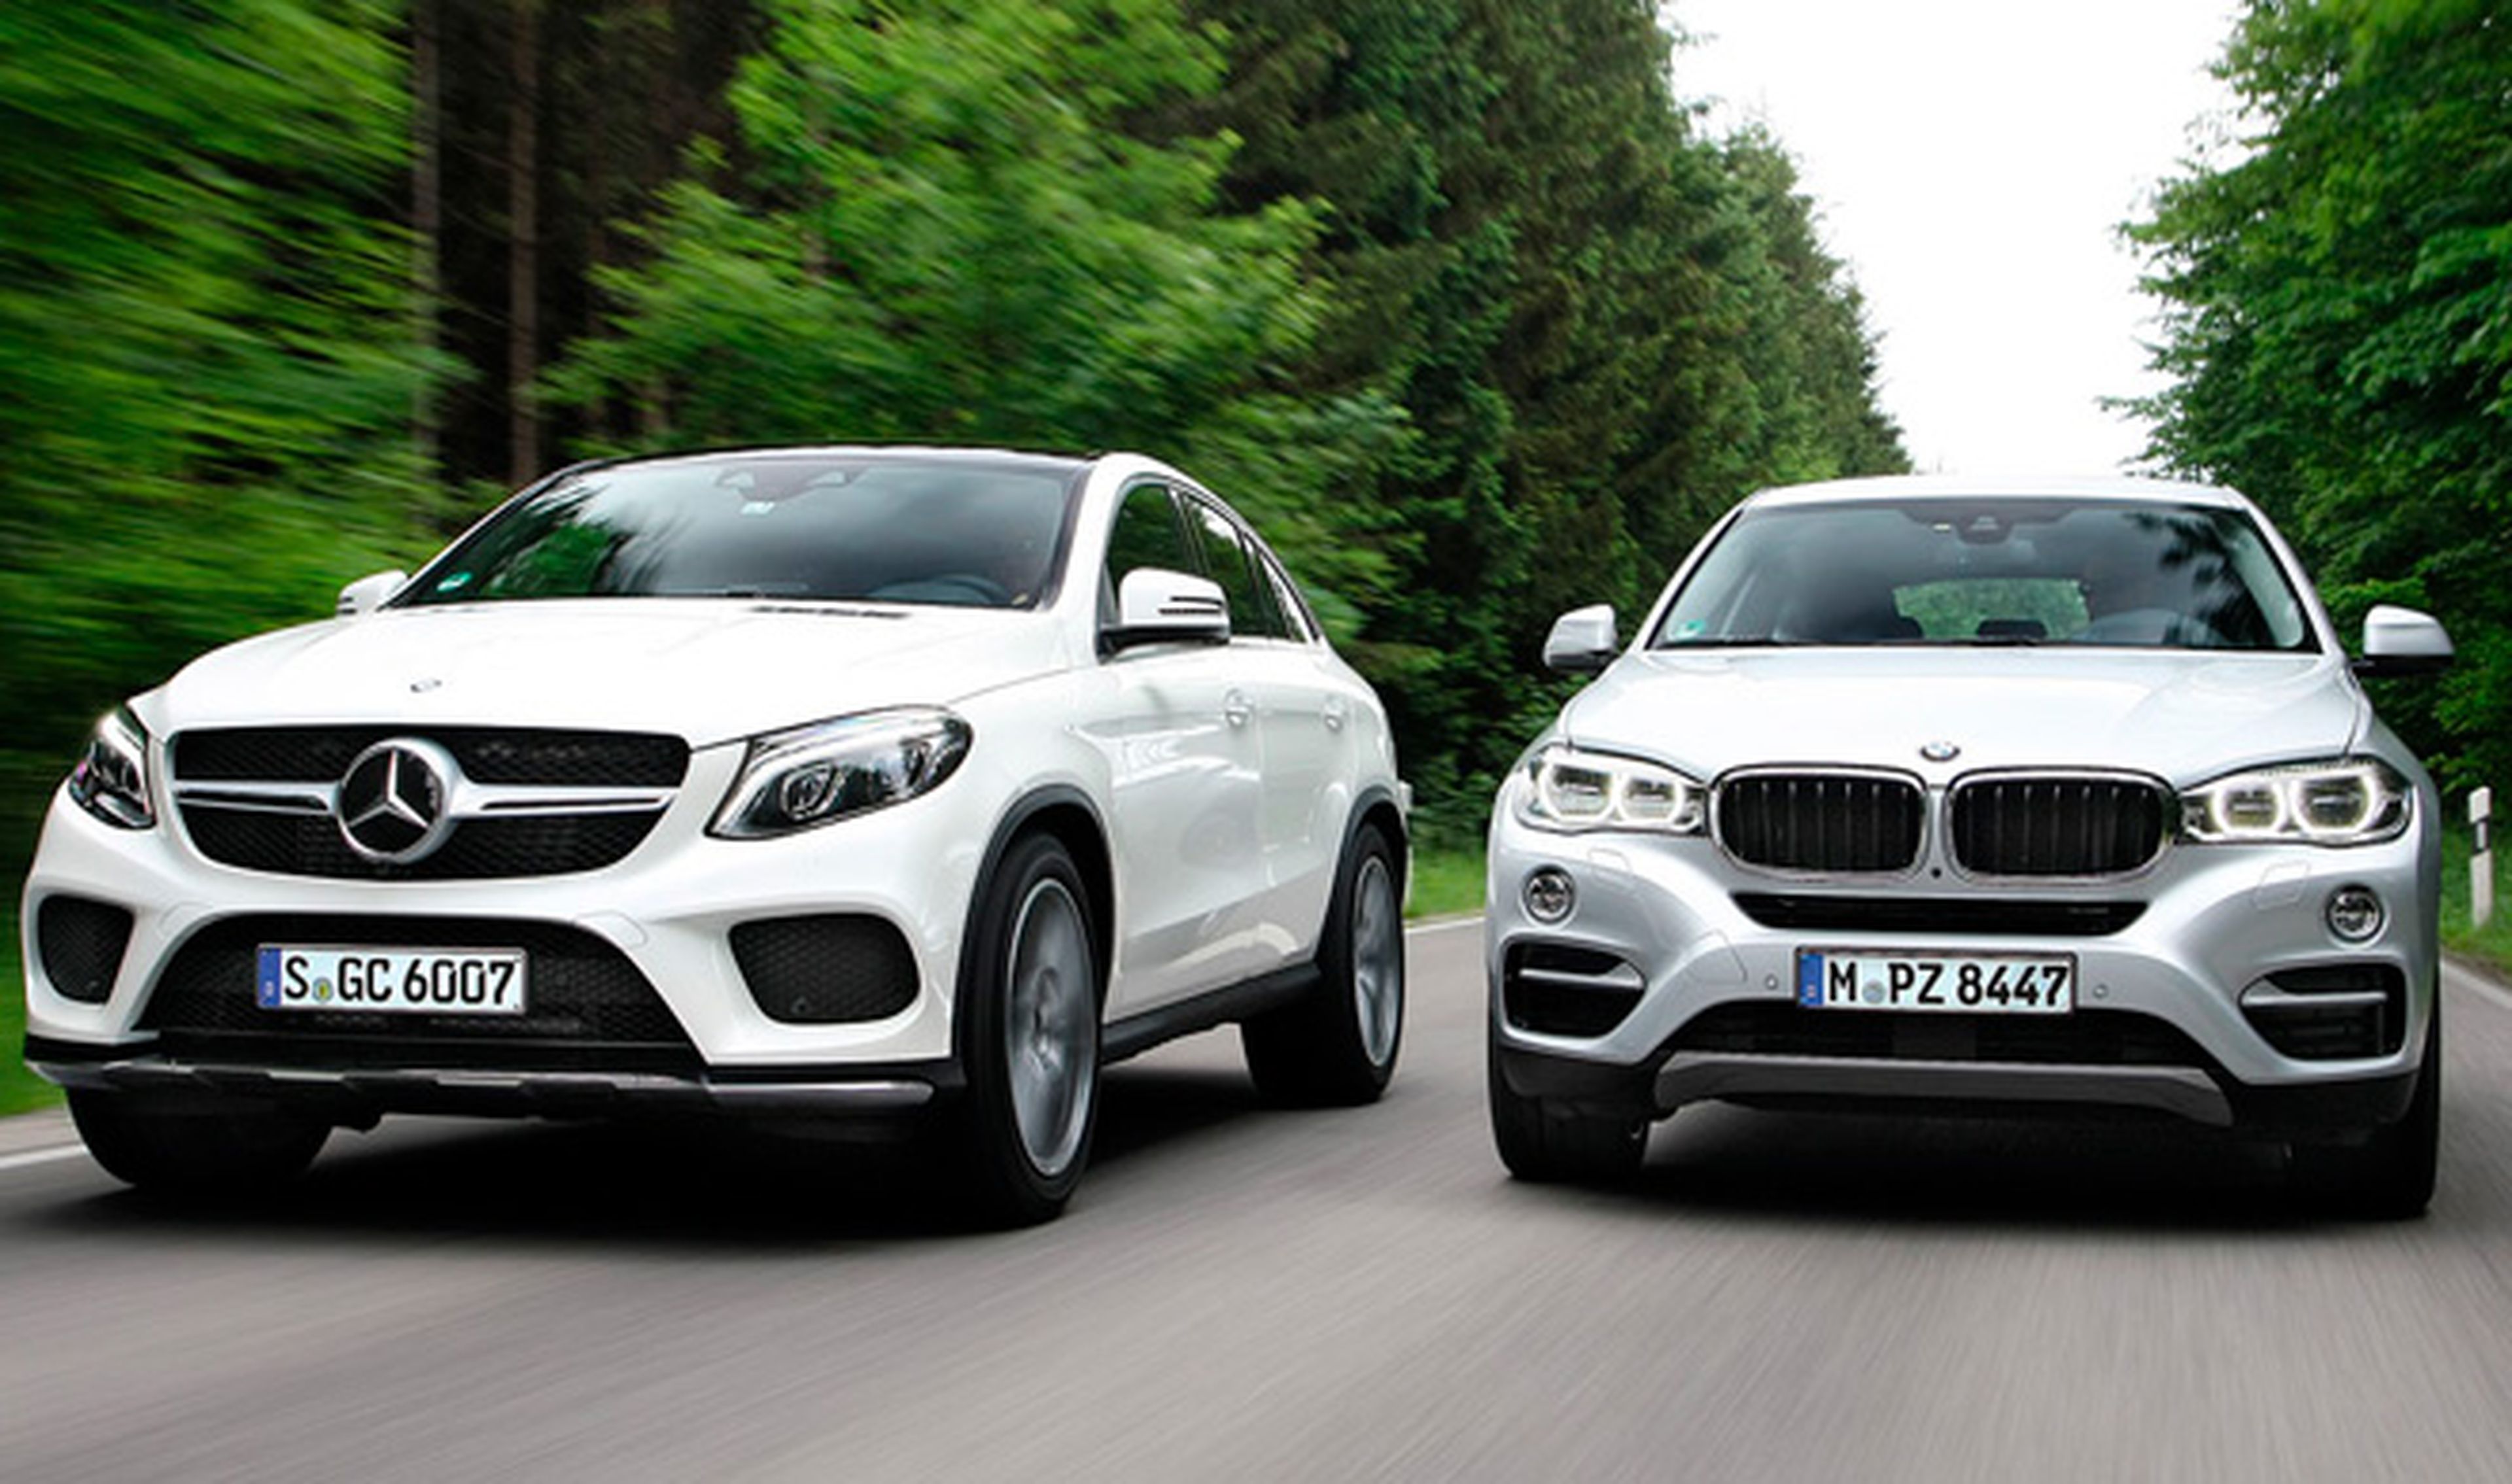 ¿Por qué BMW y Mercedes tienen coches tan similares?